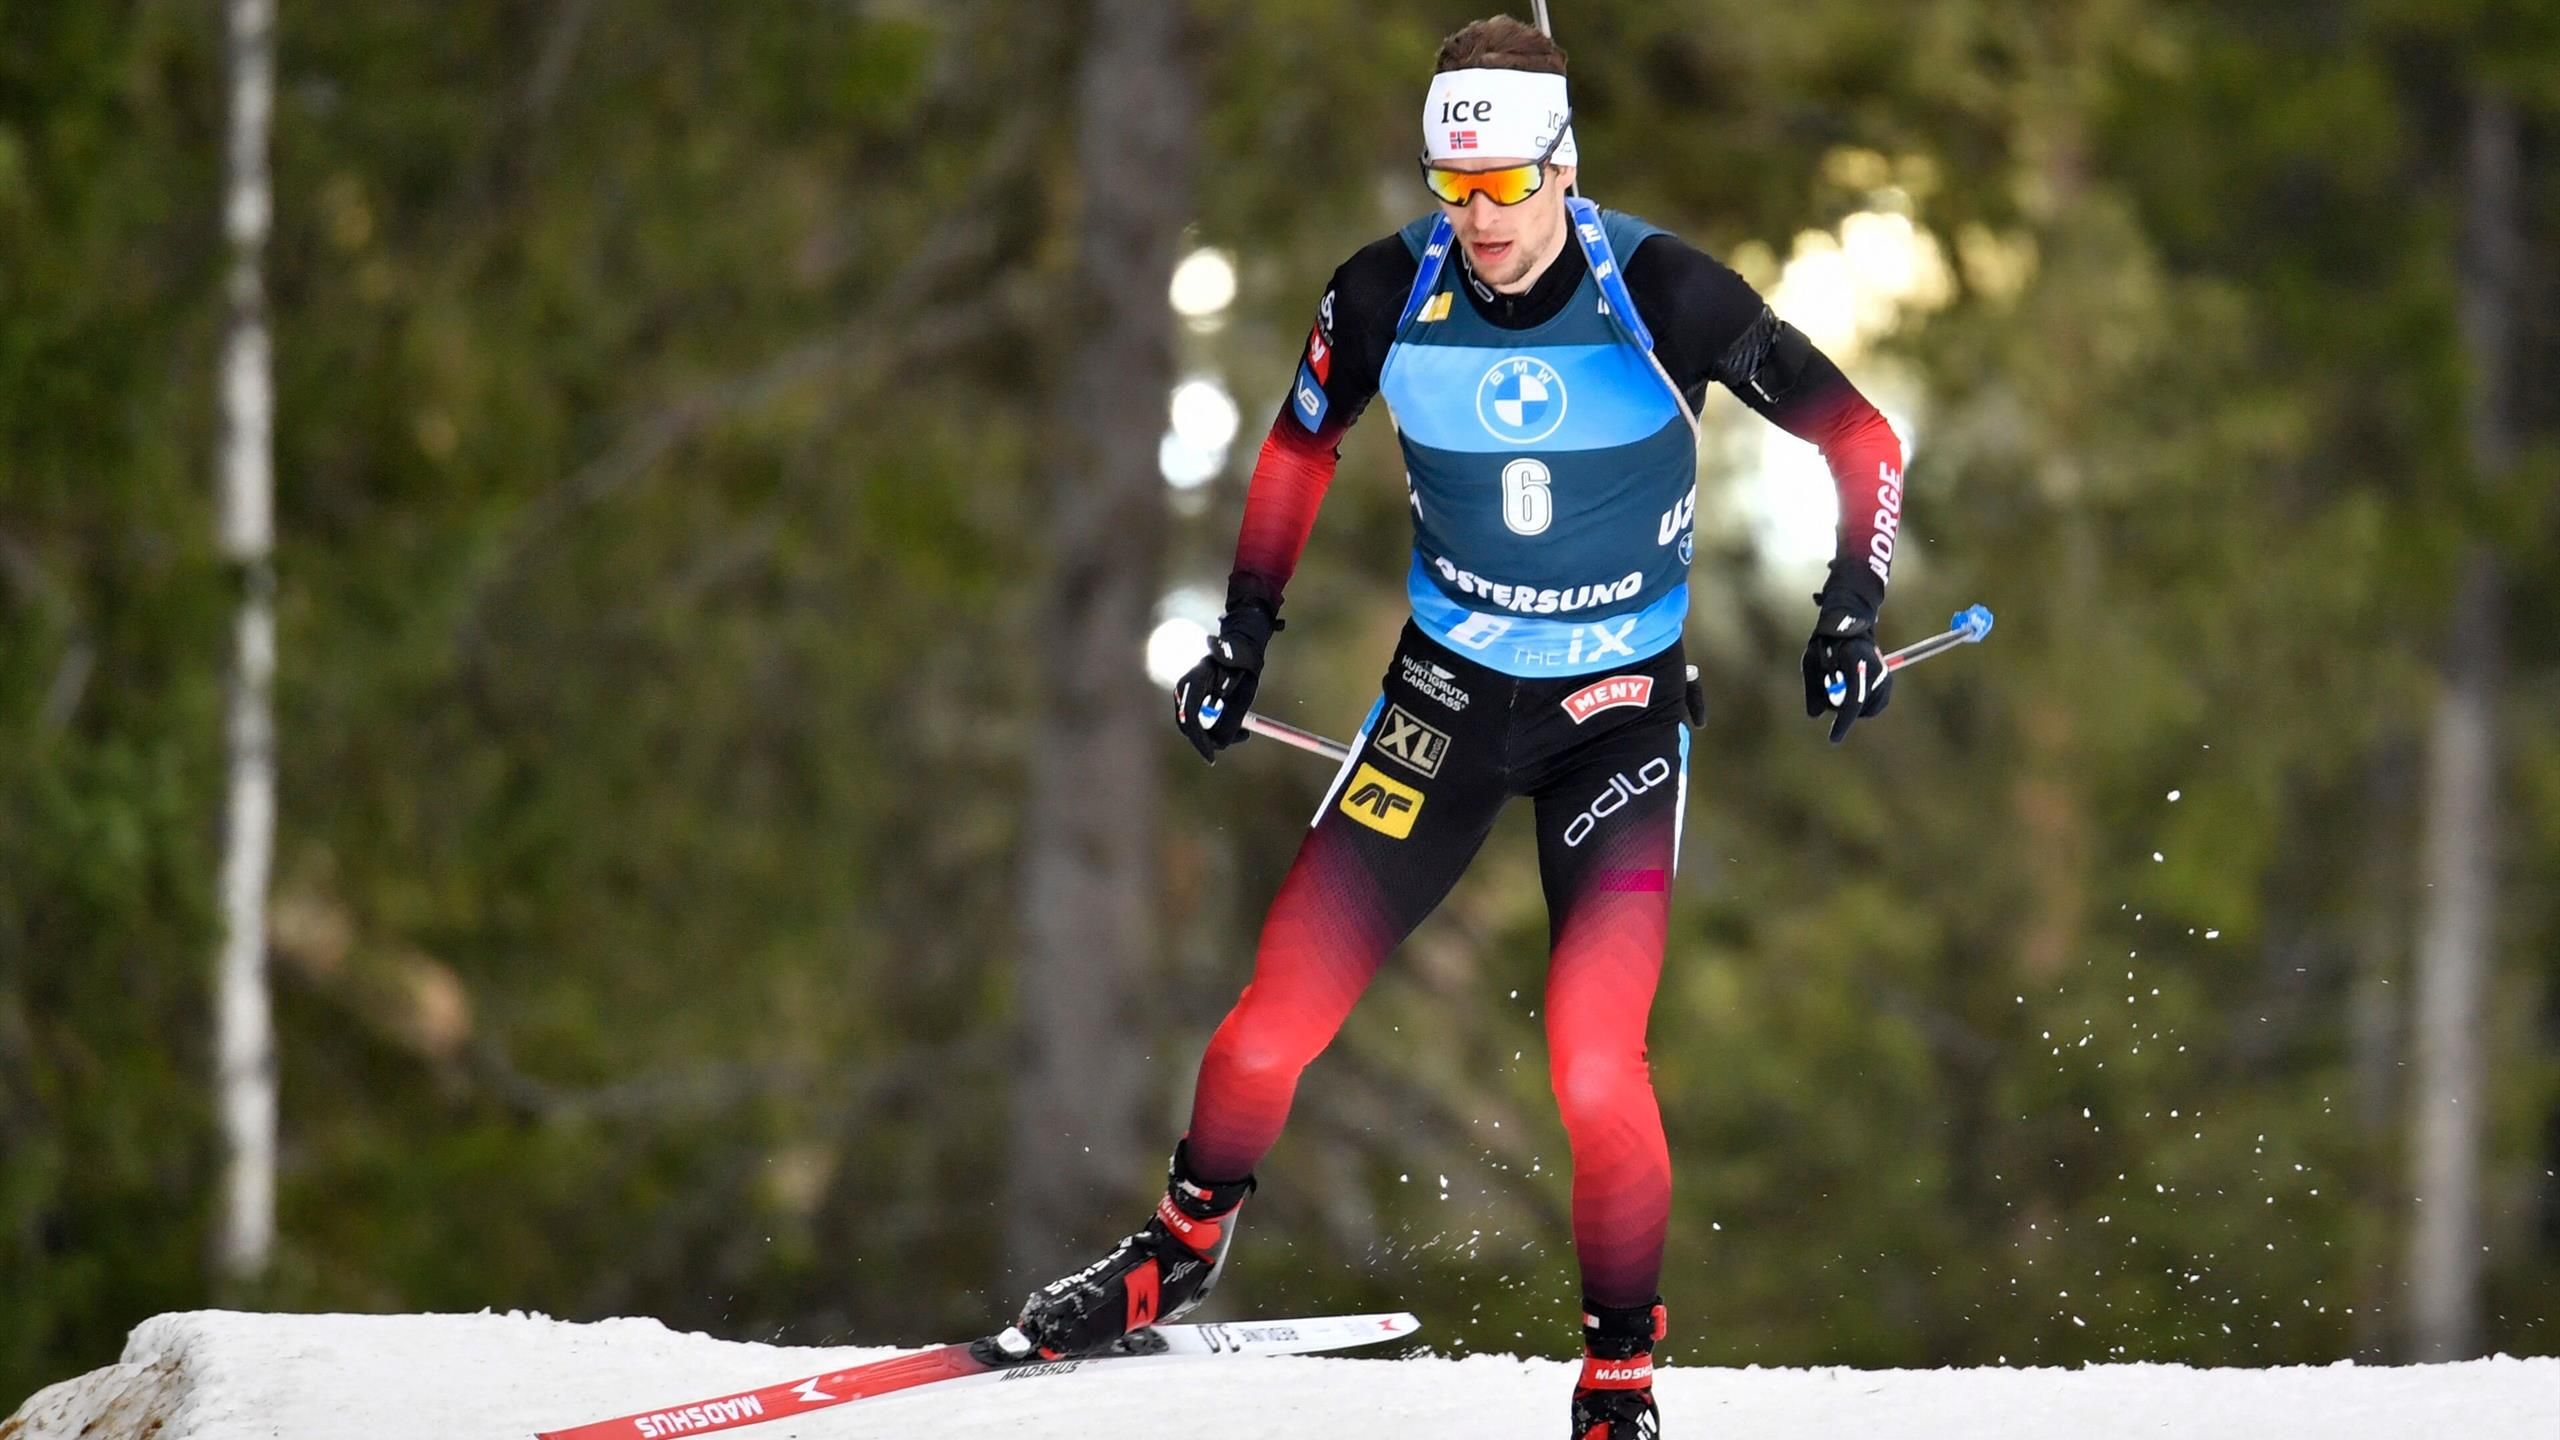 Biathlon news - Sturla Holm Laegreid sets up epic finale with biathlon pursuit win